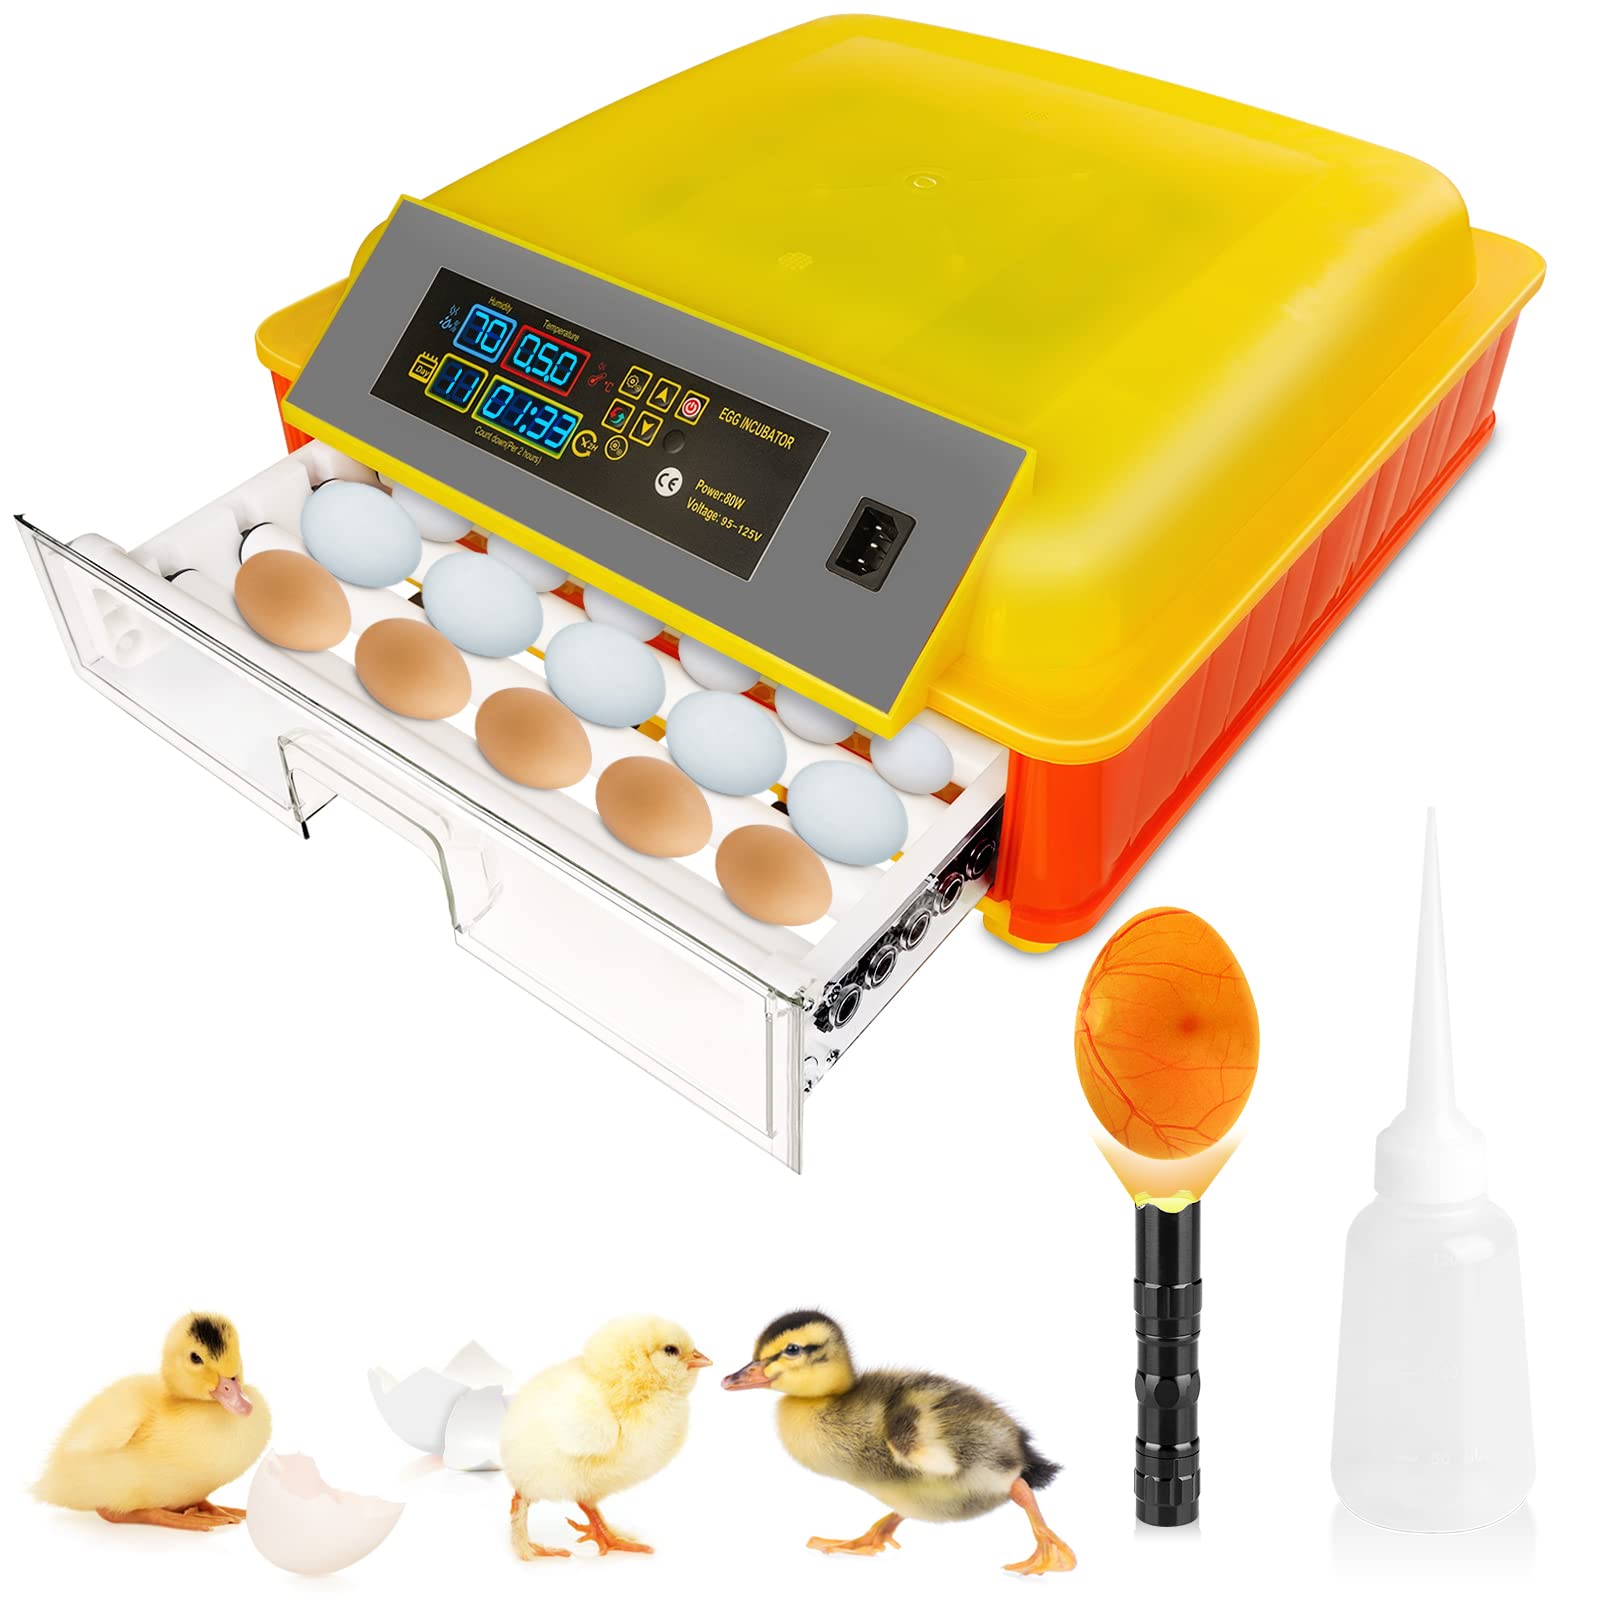 46 Inkubator za jaja za valenje jaja, automatski okretač jaja s kontrolom temperature i nadzorom vlažnosti Profesionalni rasvjetni uređaj za jaja Inkubator za perad za valenje piletine patke prepelice guske ptičjeg jaja